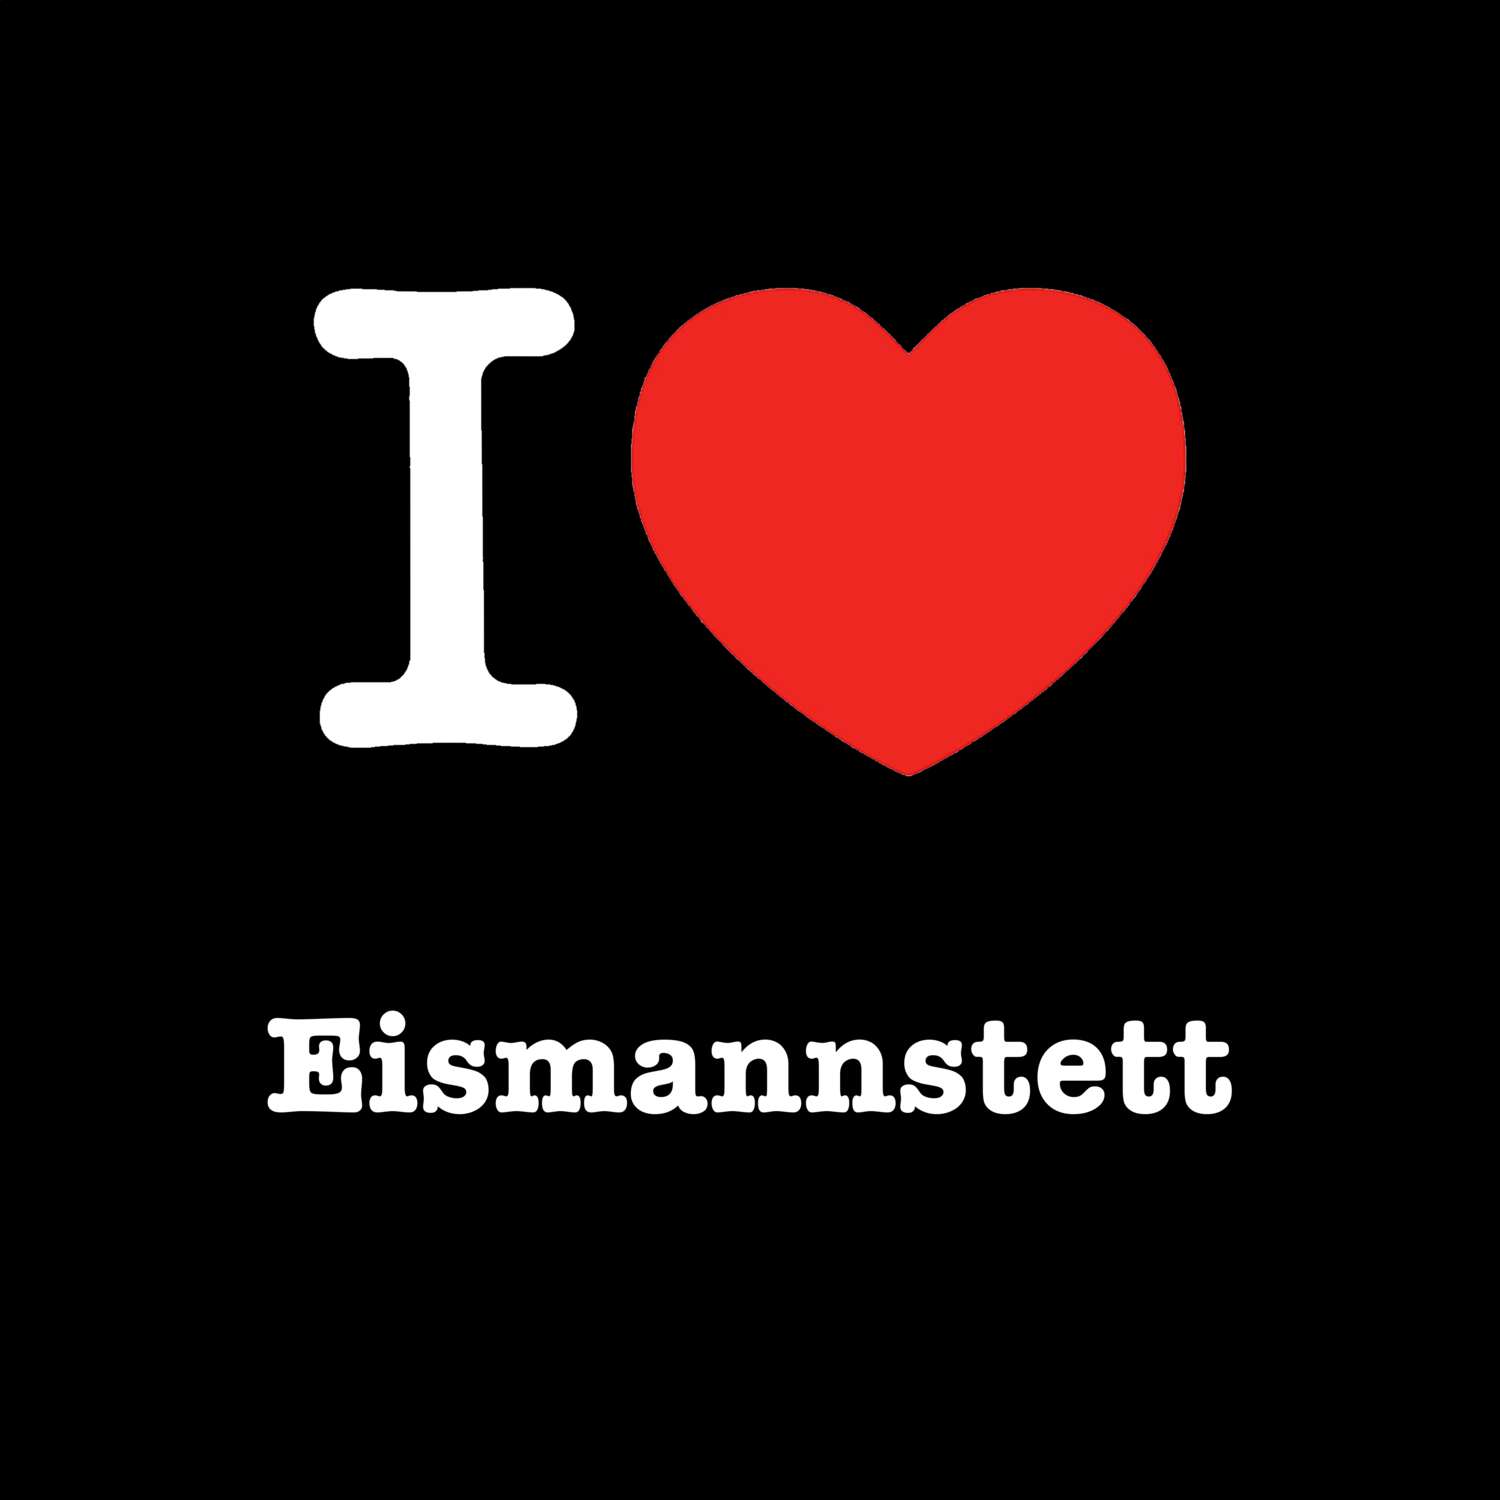 Eismannstett T-Shirt »I love«